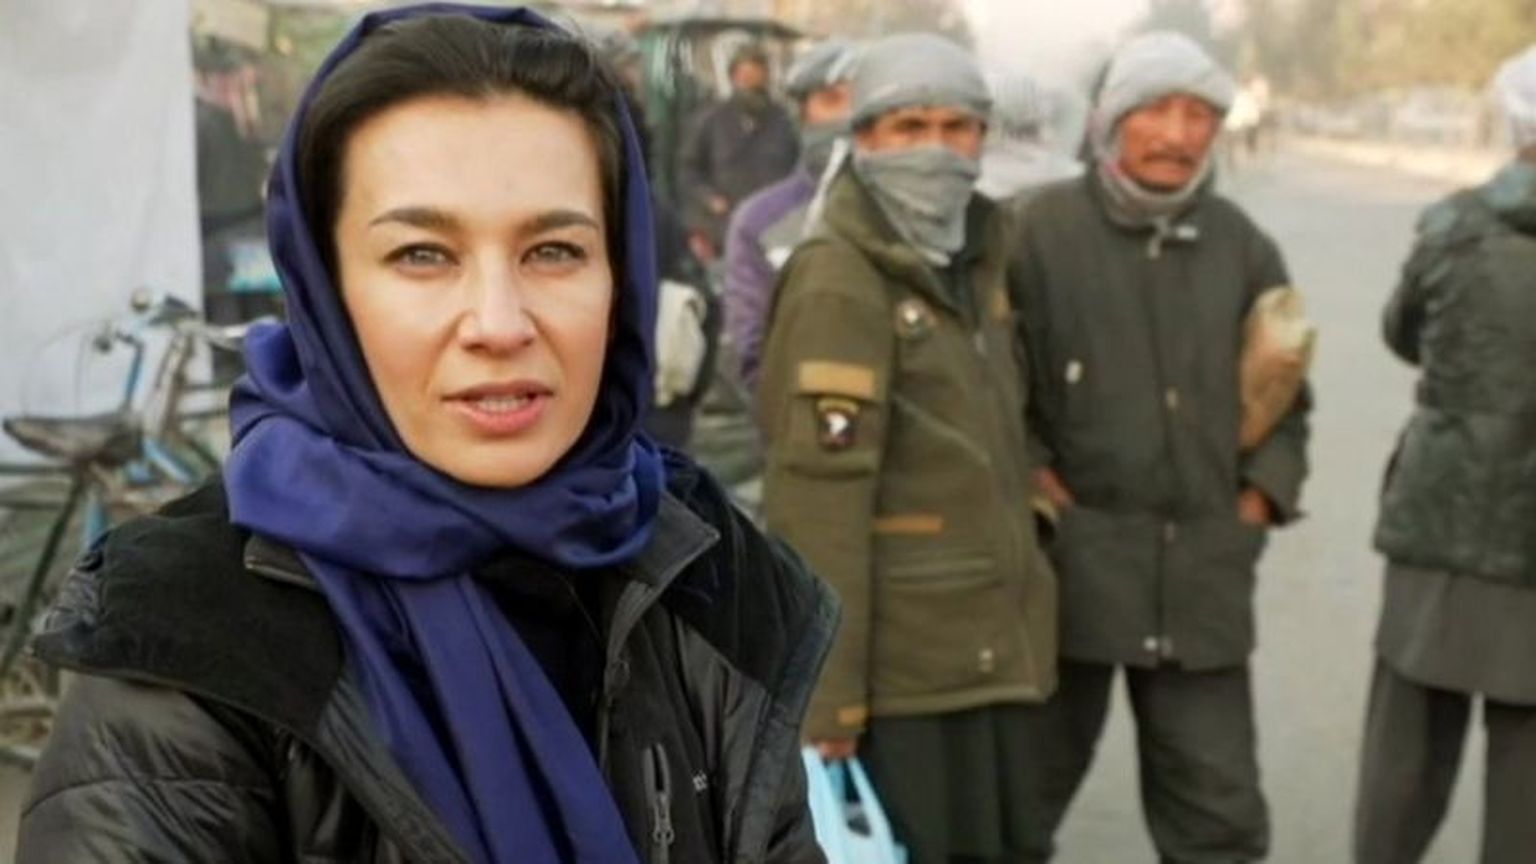 Ялда Хаким уехала из Афганистана еще в годы советской оккупации.